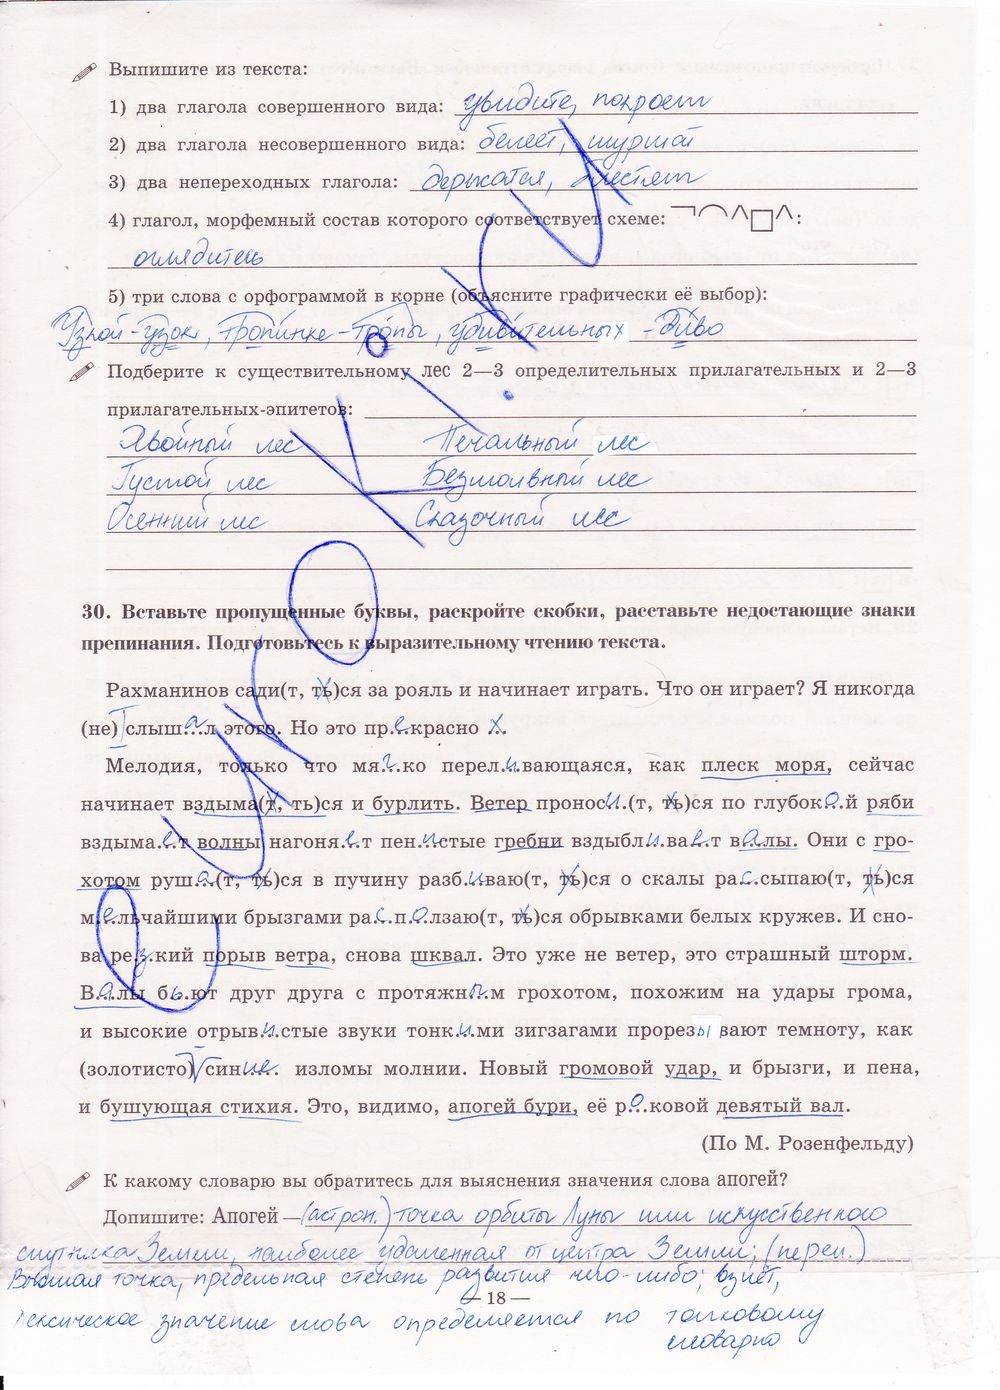 ГДЗ Русский язык 7 класс - стр. 18